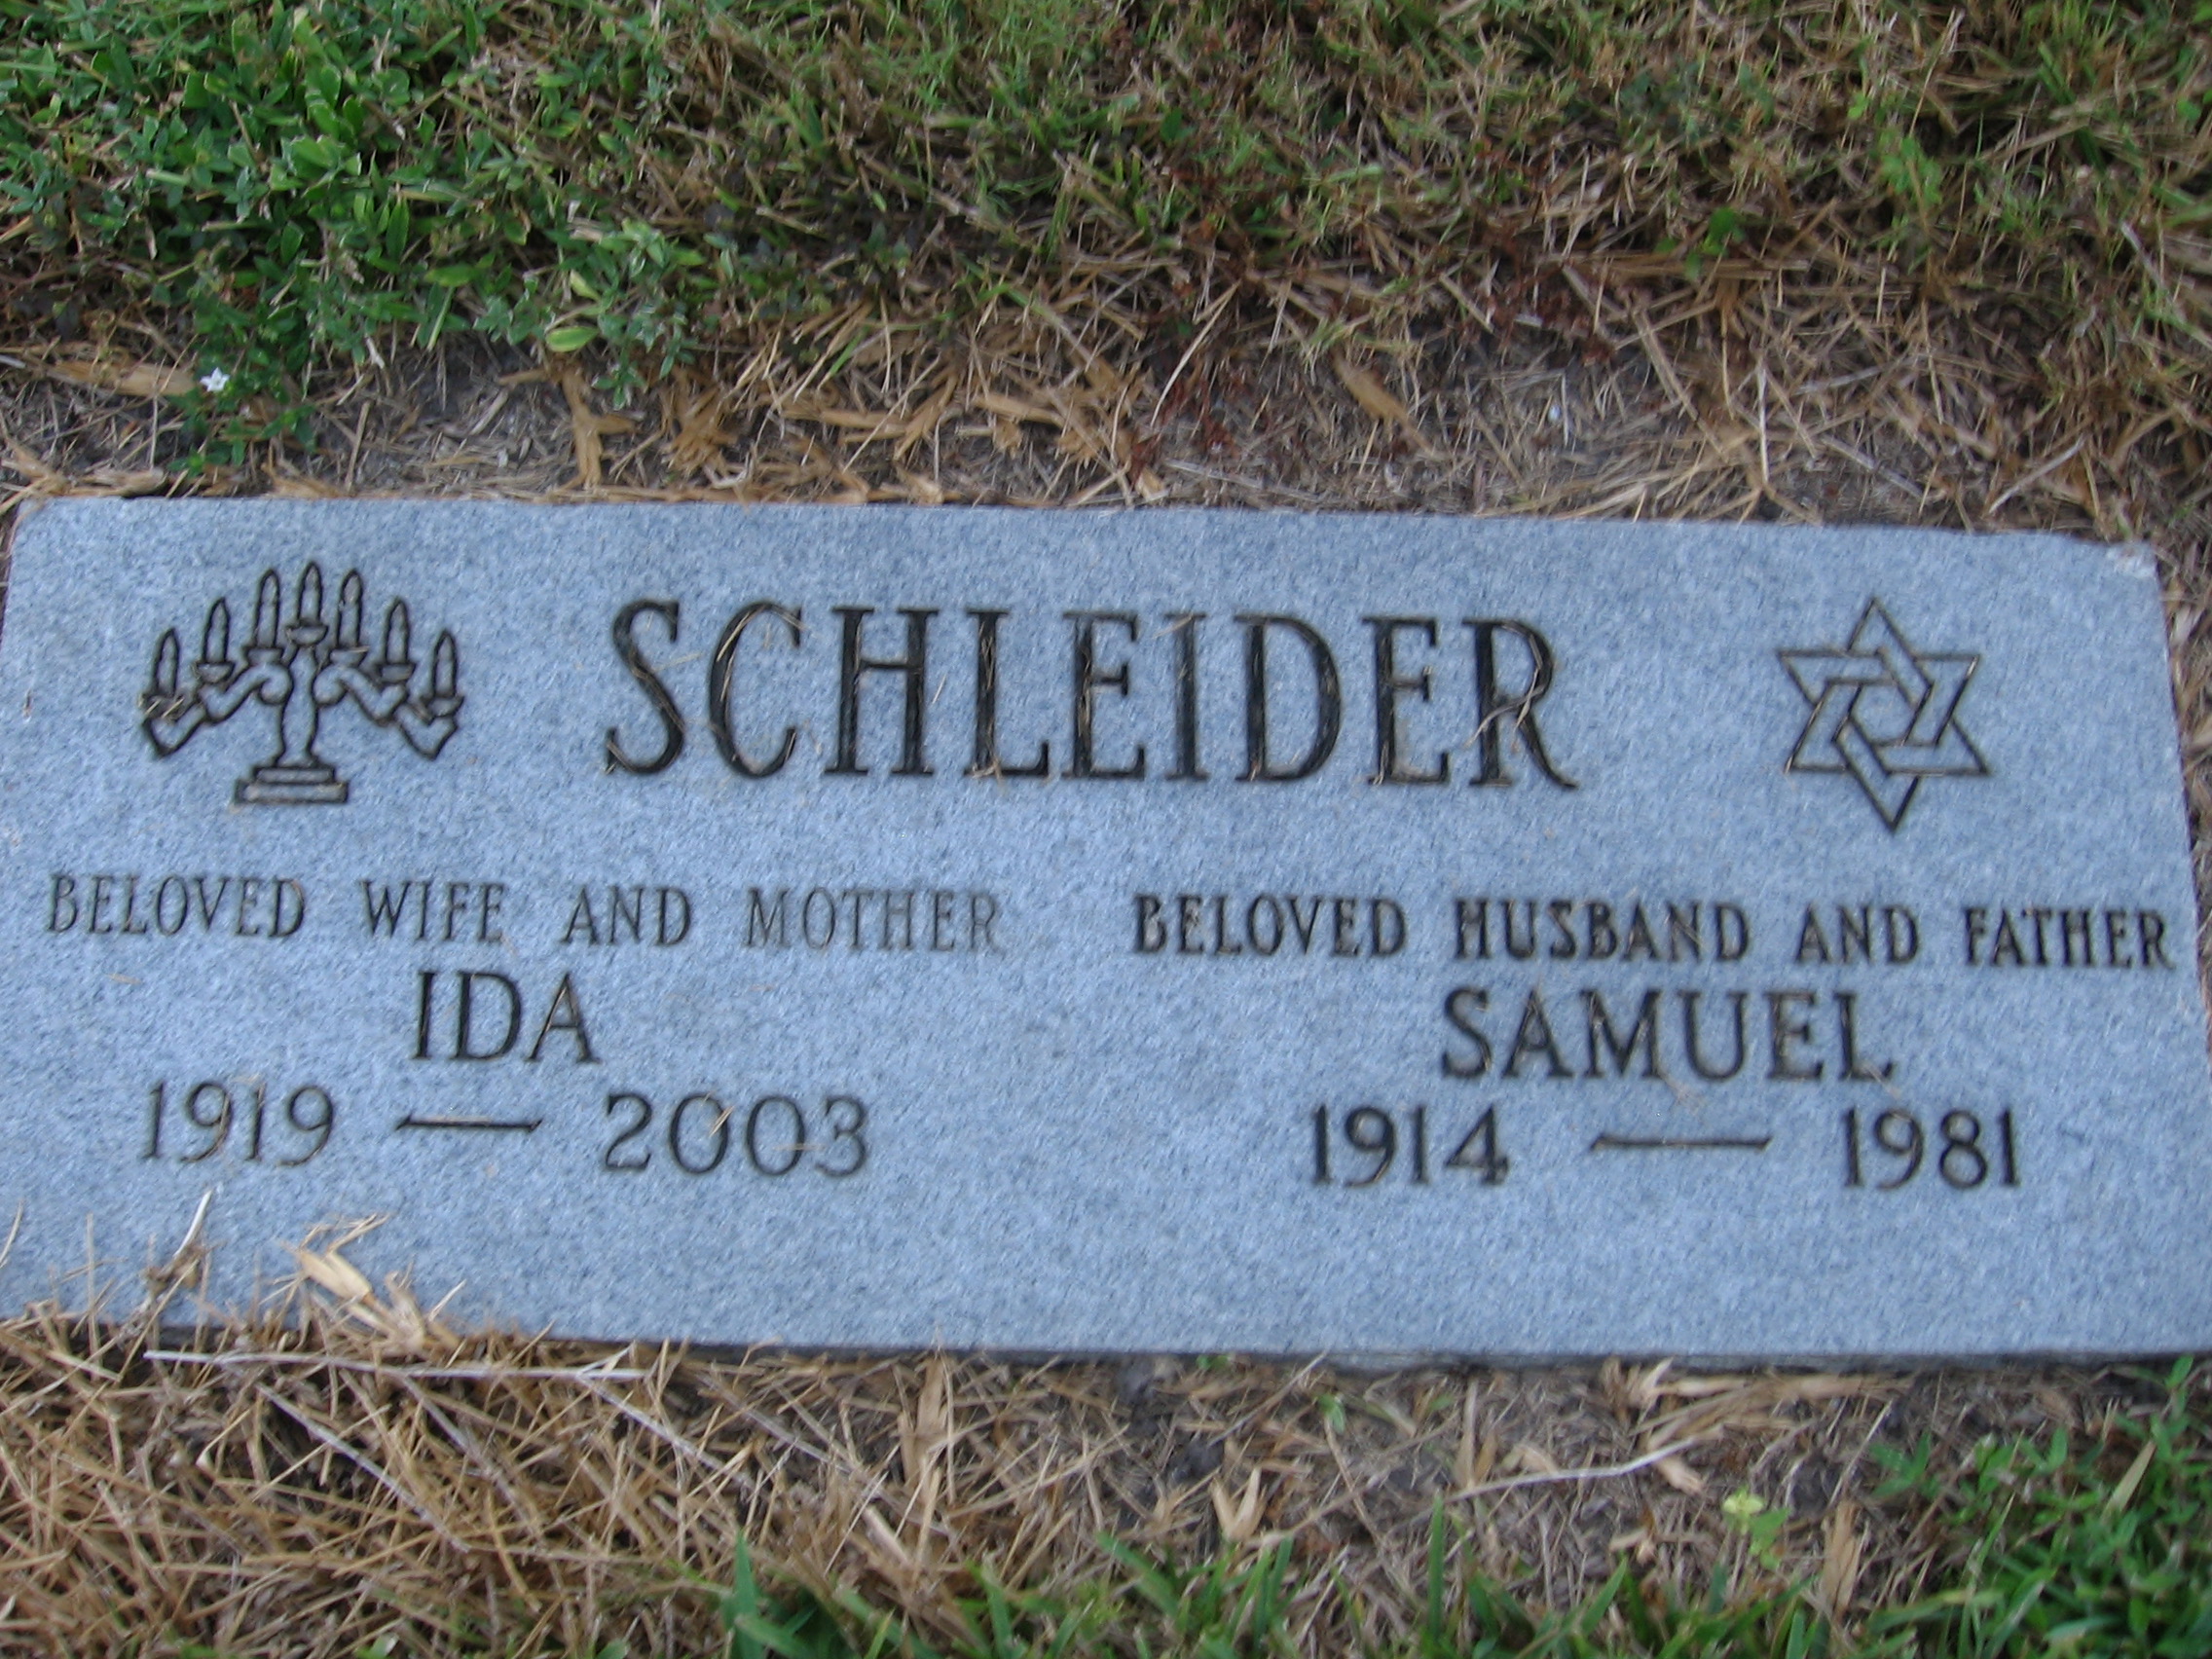 Samuel Schleider